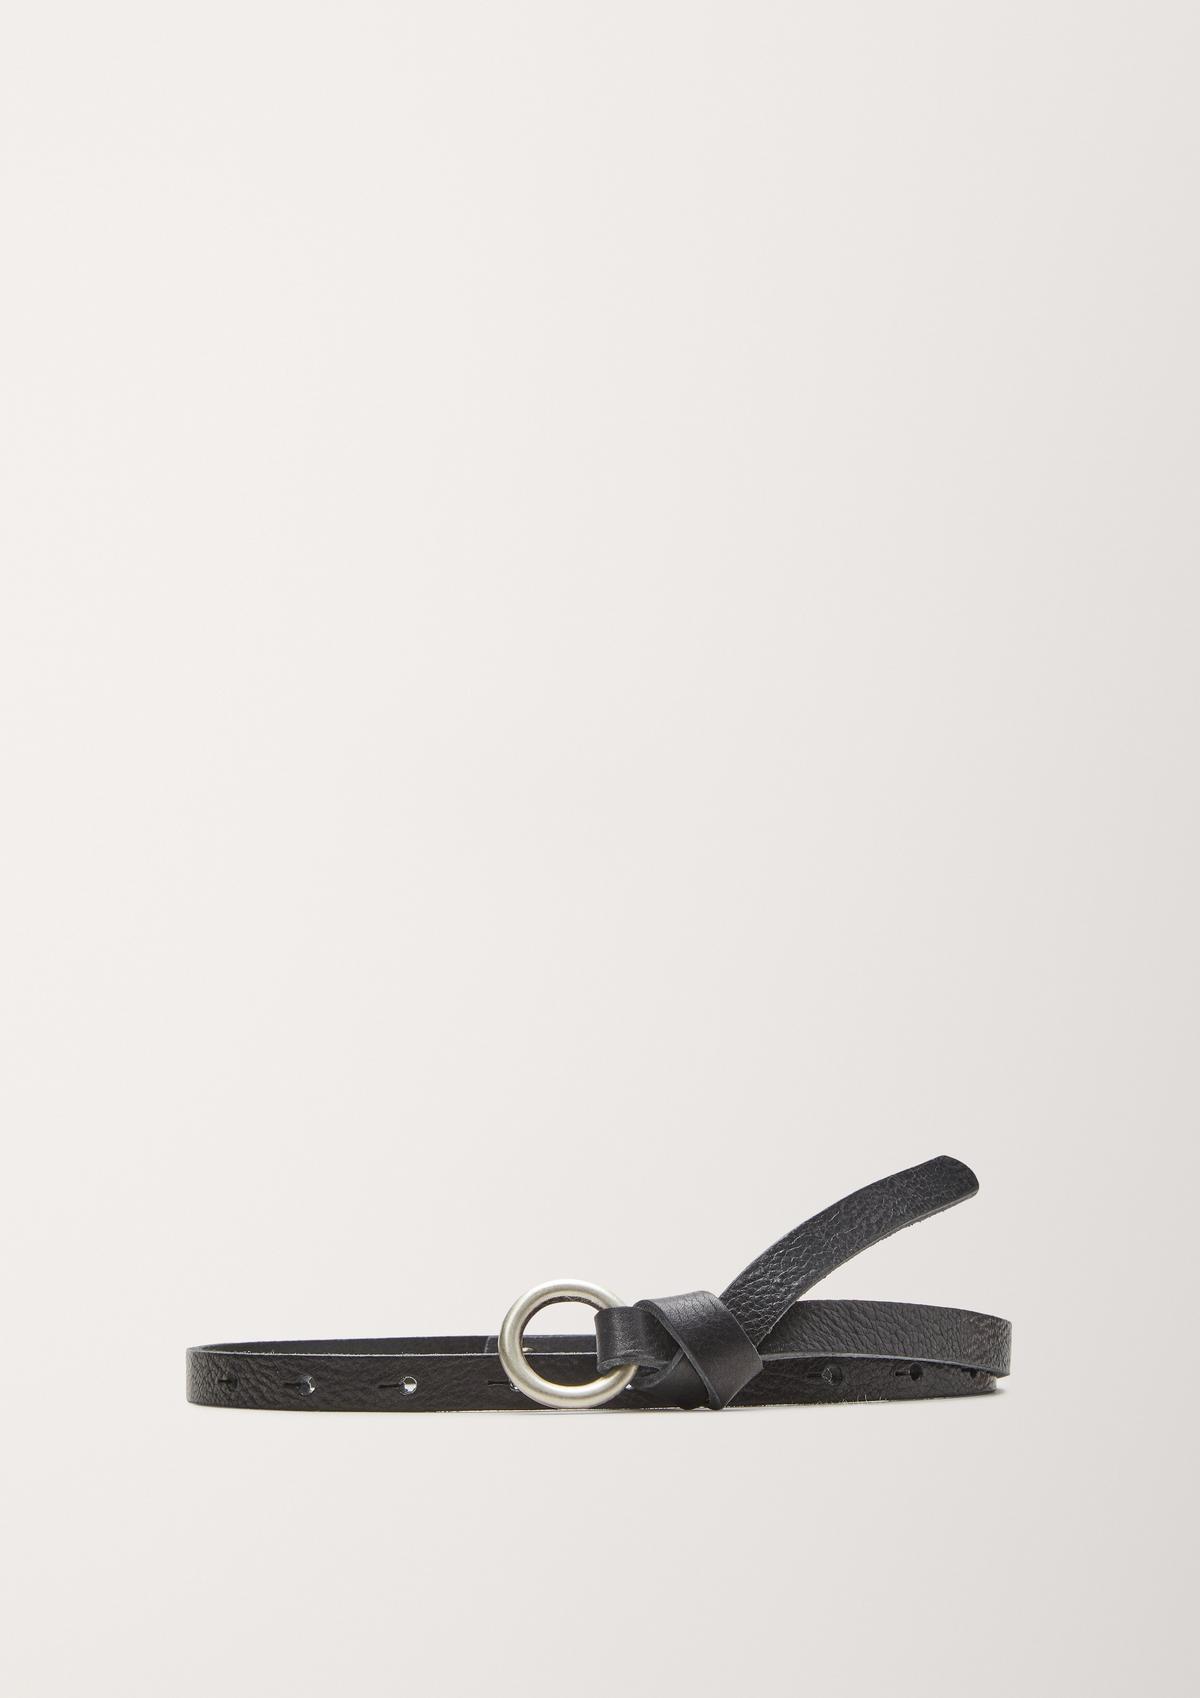 s.Oliver Leather belt